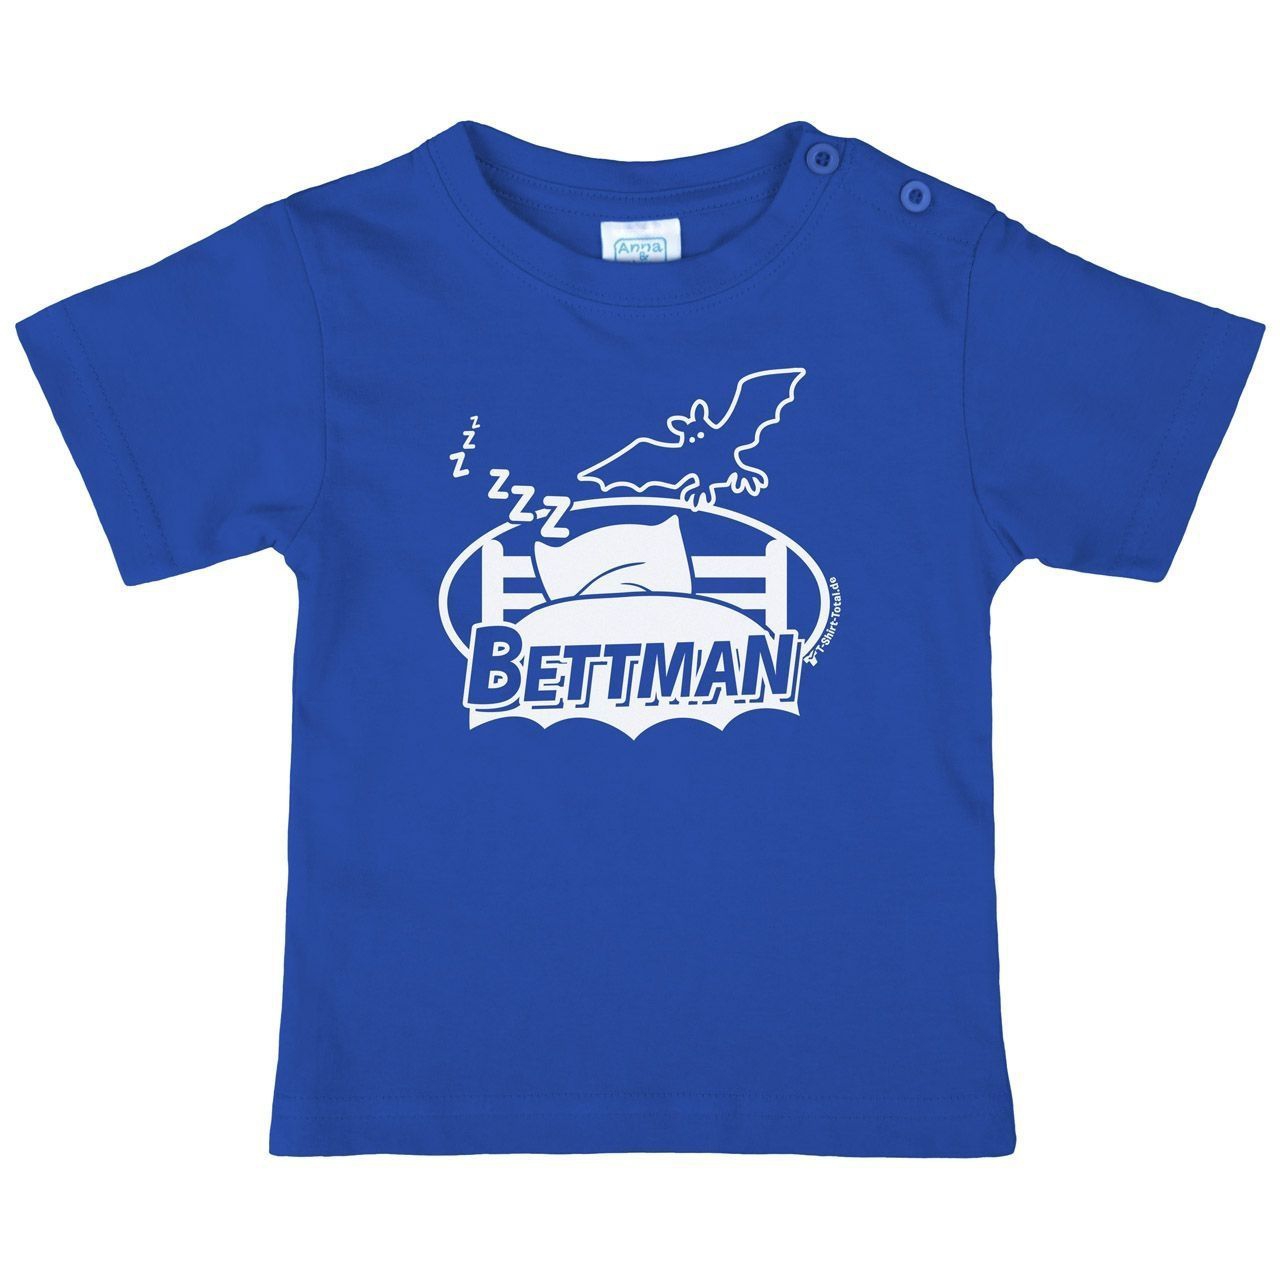 Bettman Kinder T-Shirt royal 56 / 62